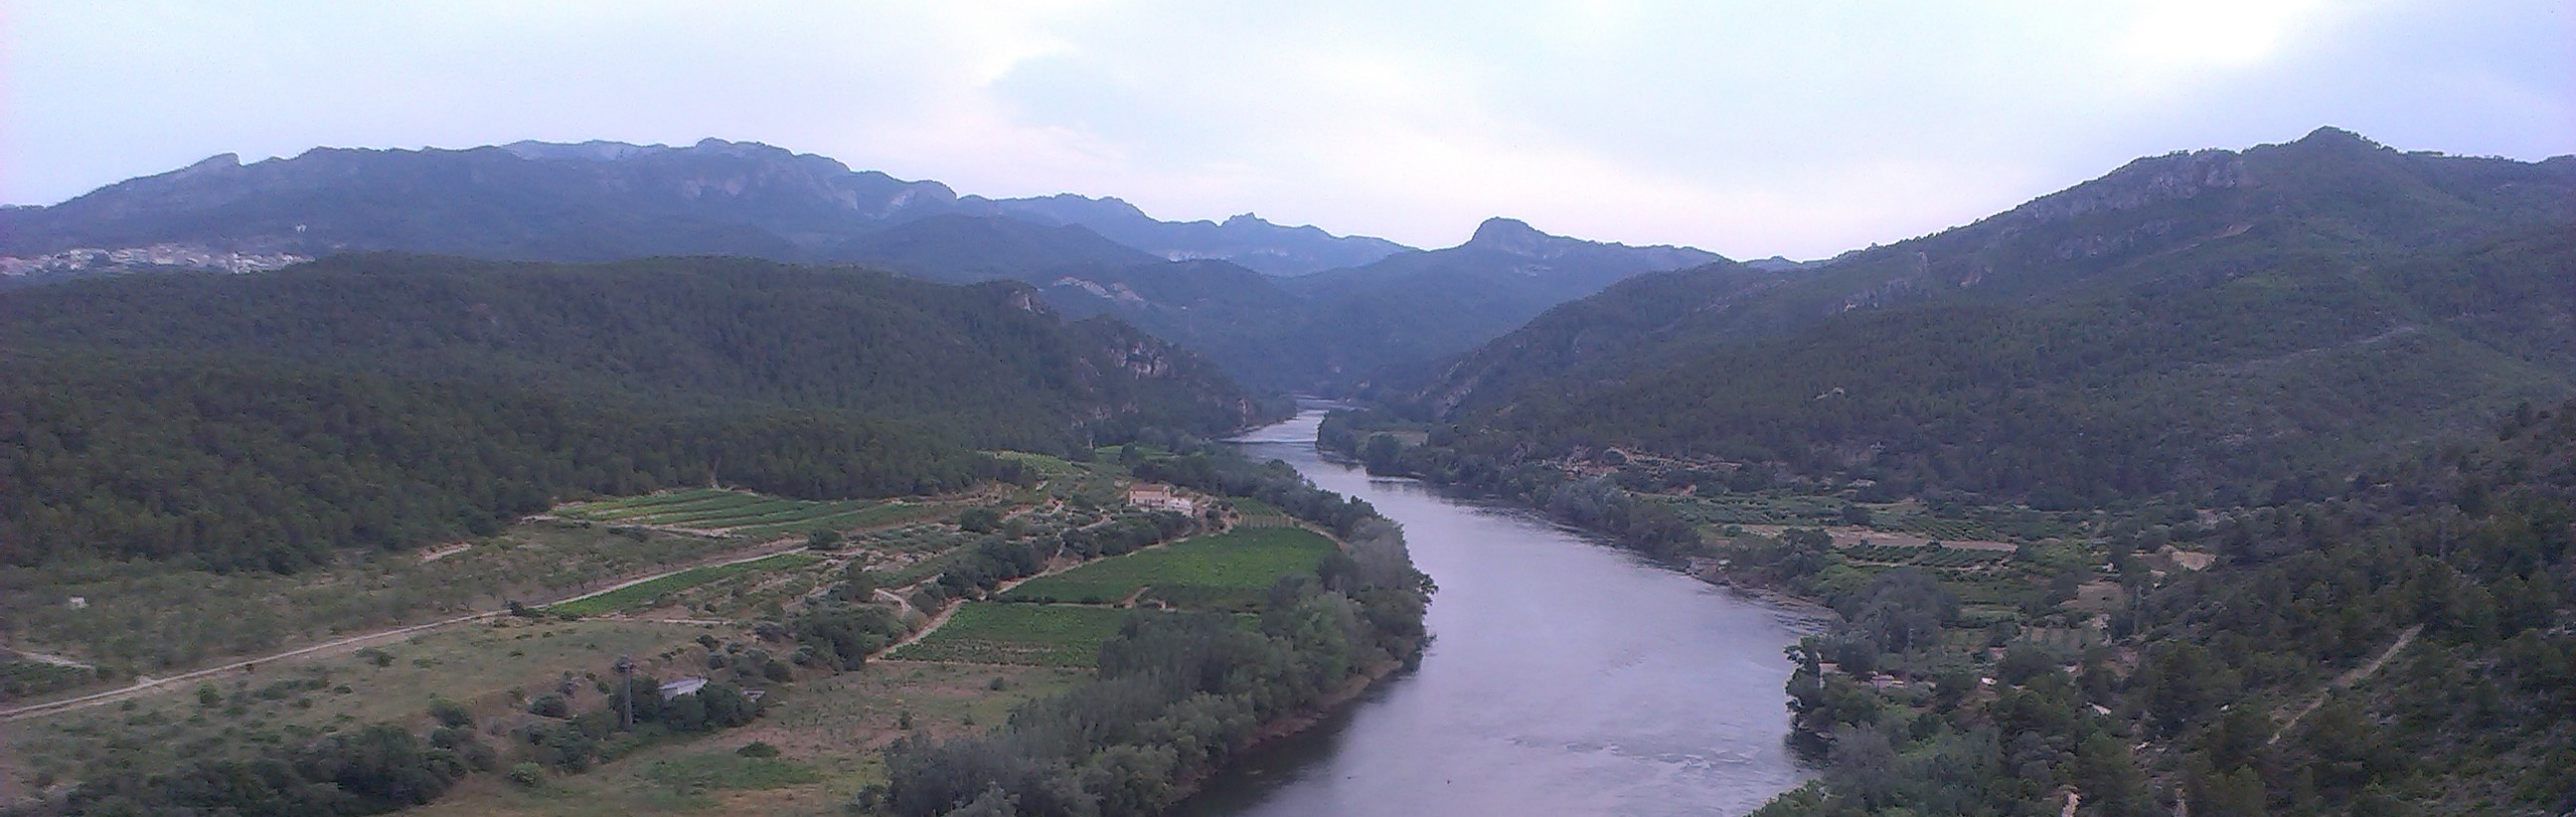 AVISO HIDROLÓGICO: Se esperan crecimientos de caudal en los ríos del Pirineo y del Sistema Ibérico de La Rioja